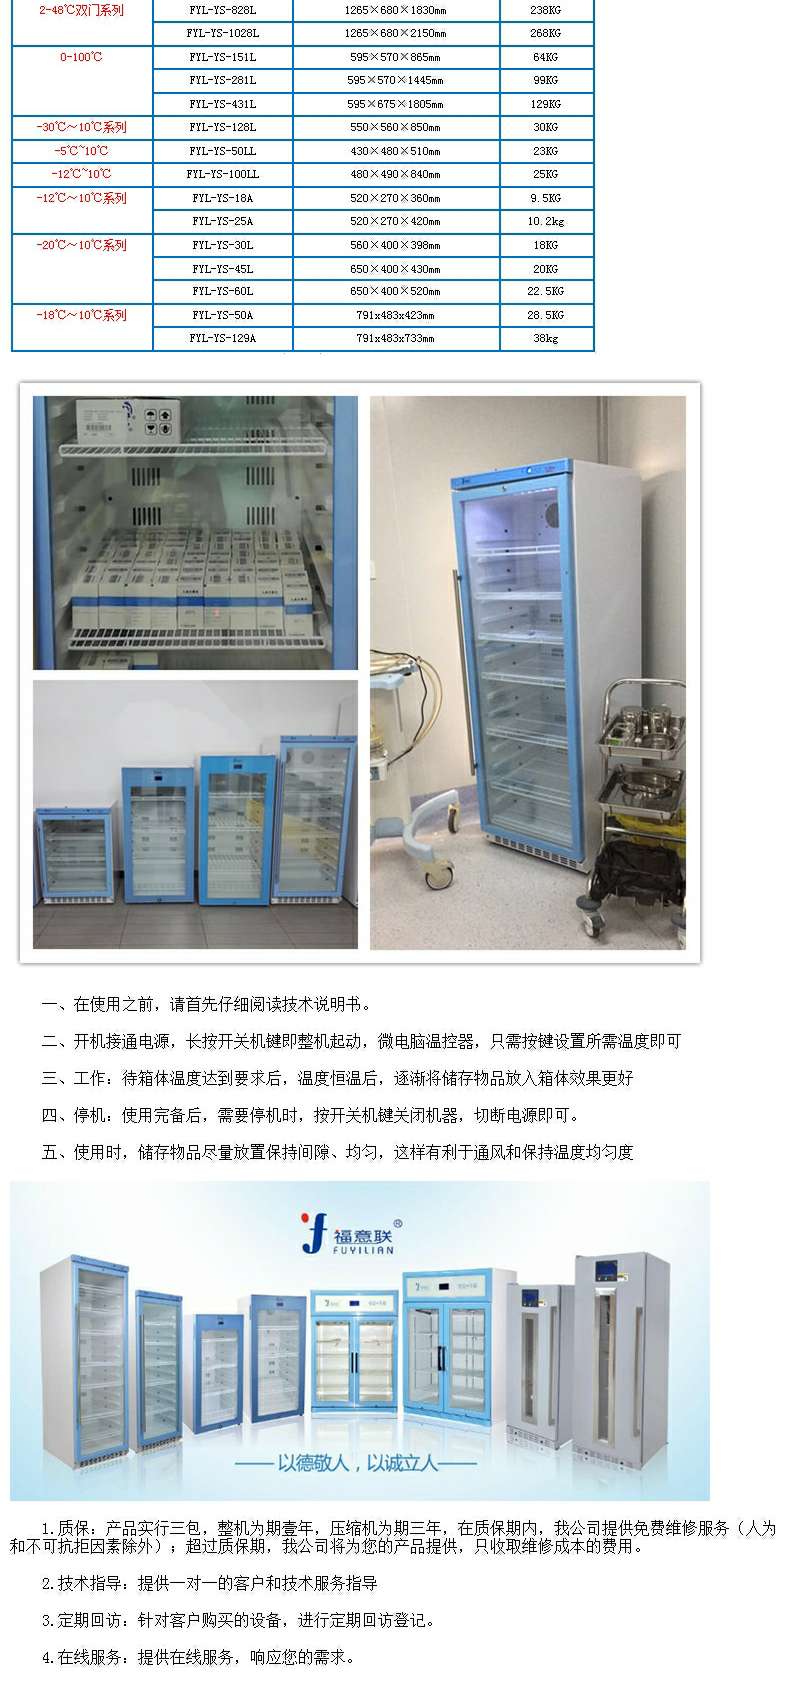 10-30度冰箱福意联15-25度临床用阴凉柜药品恒温柜